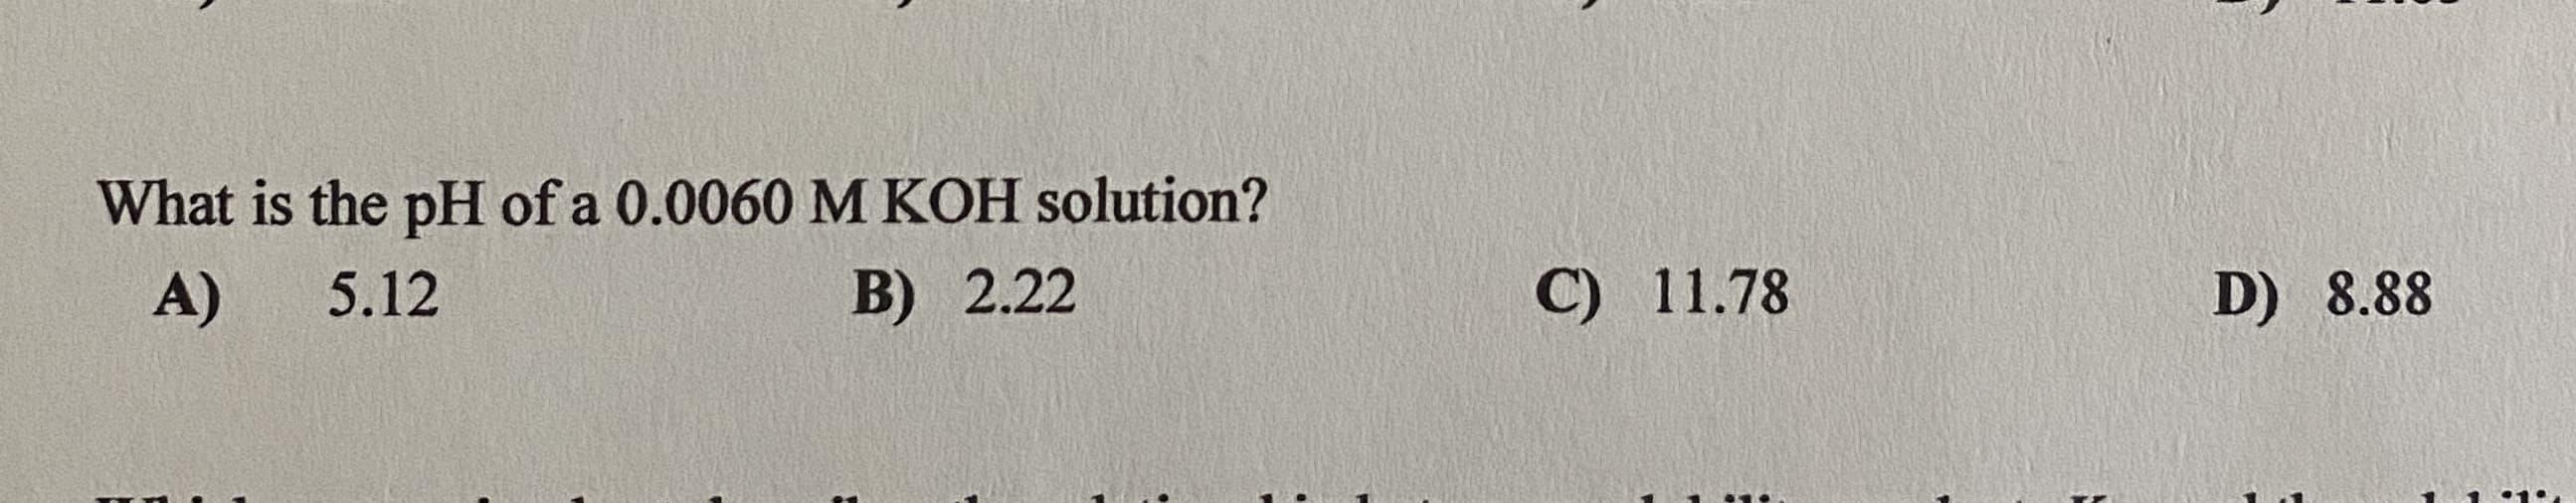 What is the pH of a 0.0060 M KOH solution?
A)
5.12
B) 2.22
C) 11.78
D) 8.88
